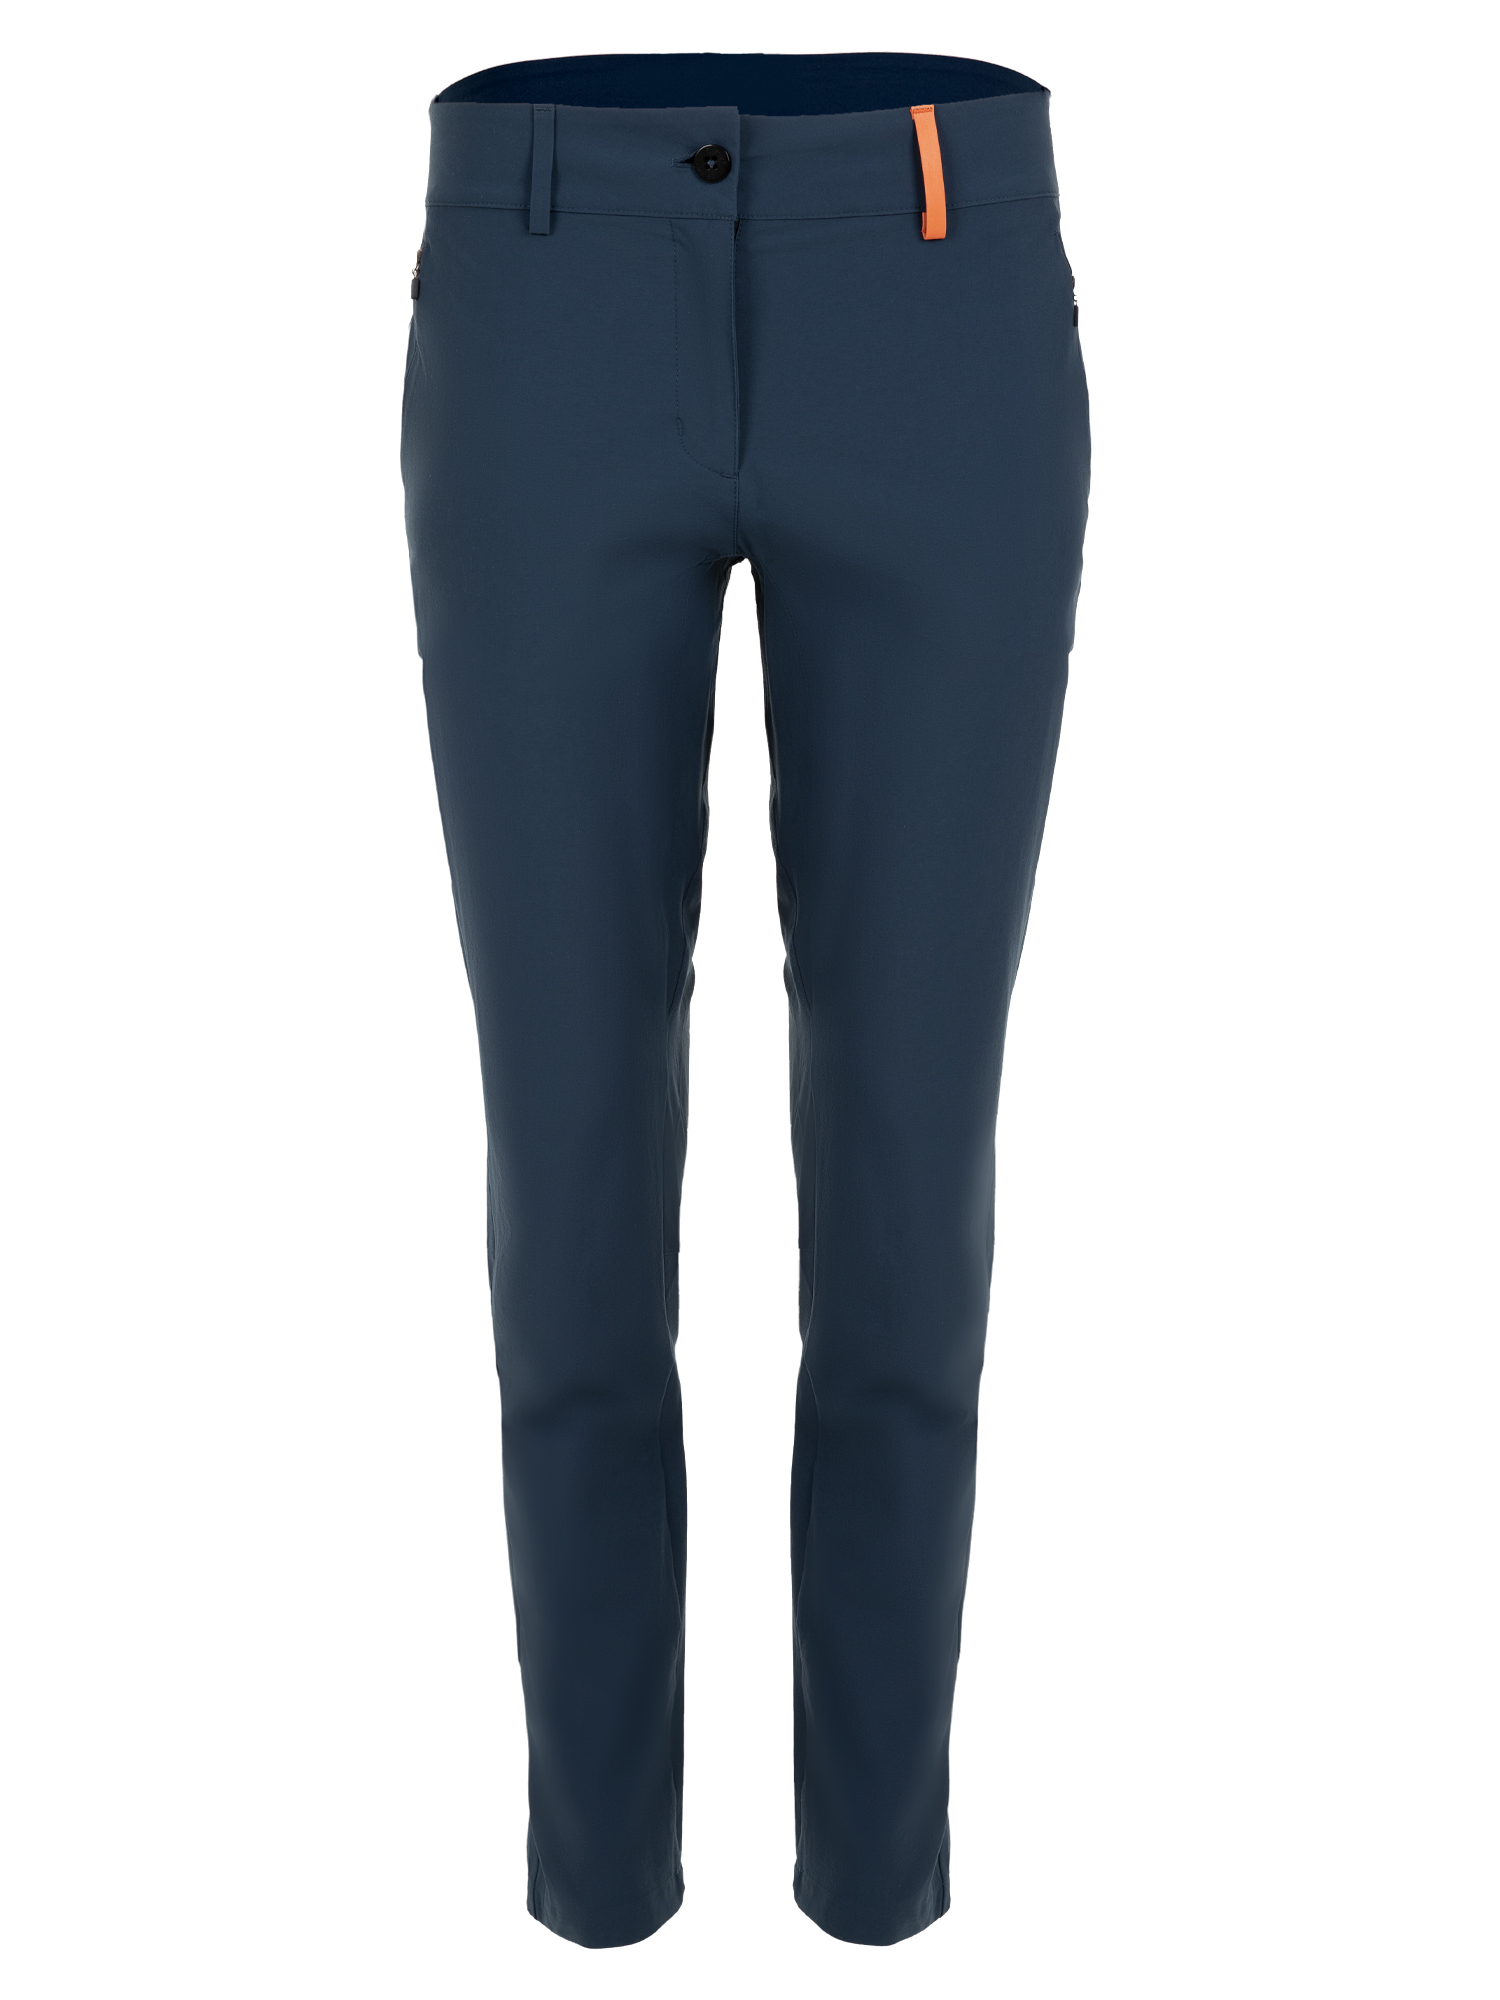 Спортивные брюки женские Ternua Nova Pt W синие M